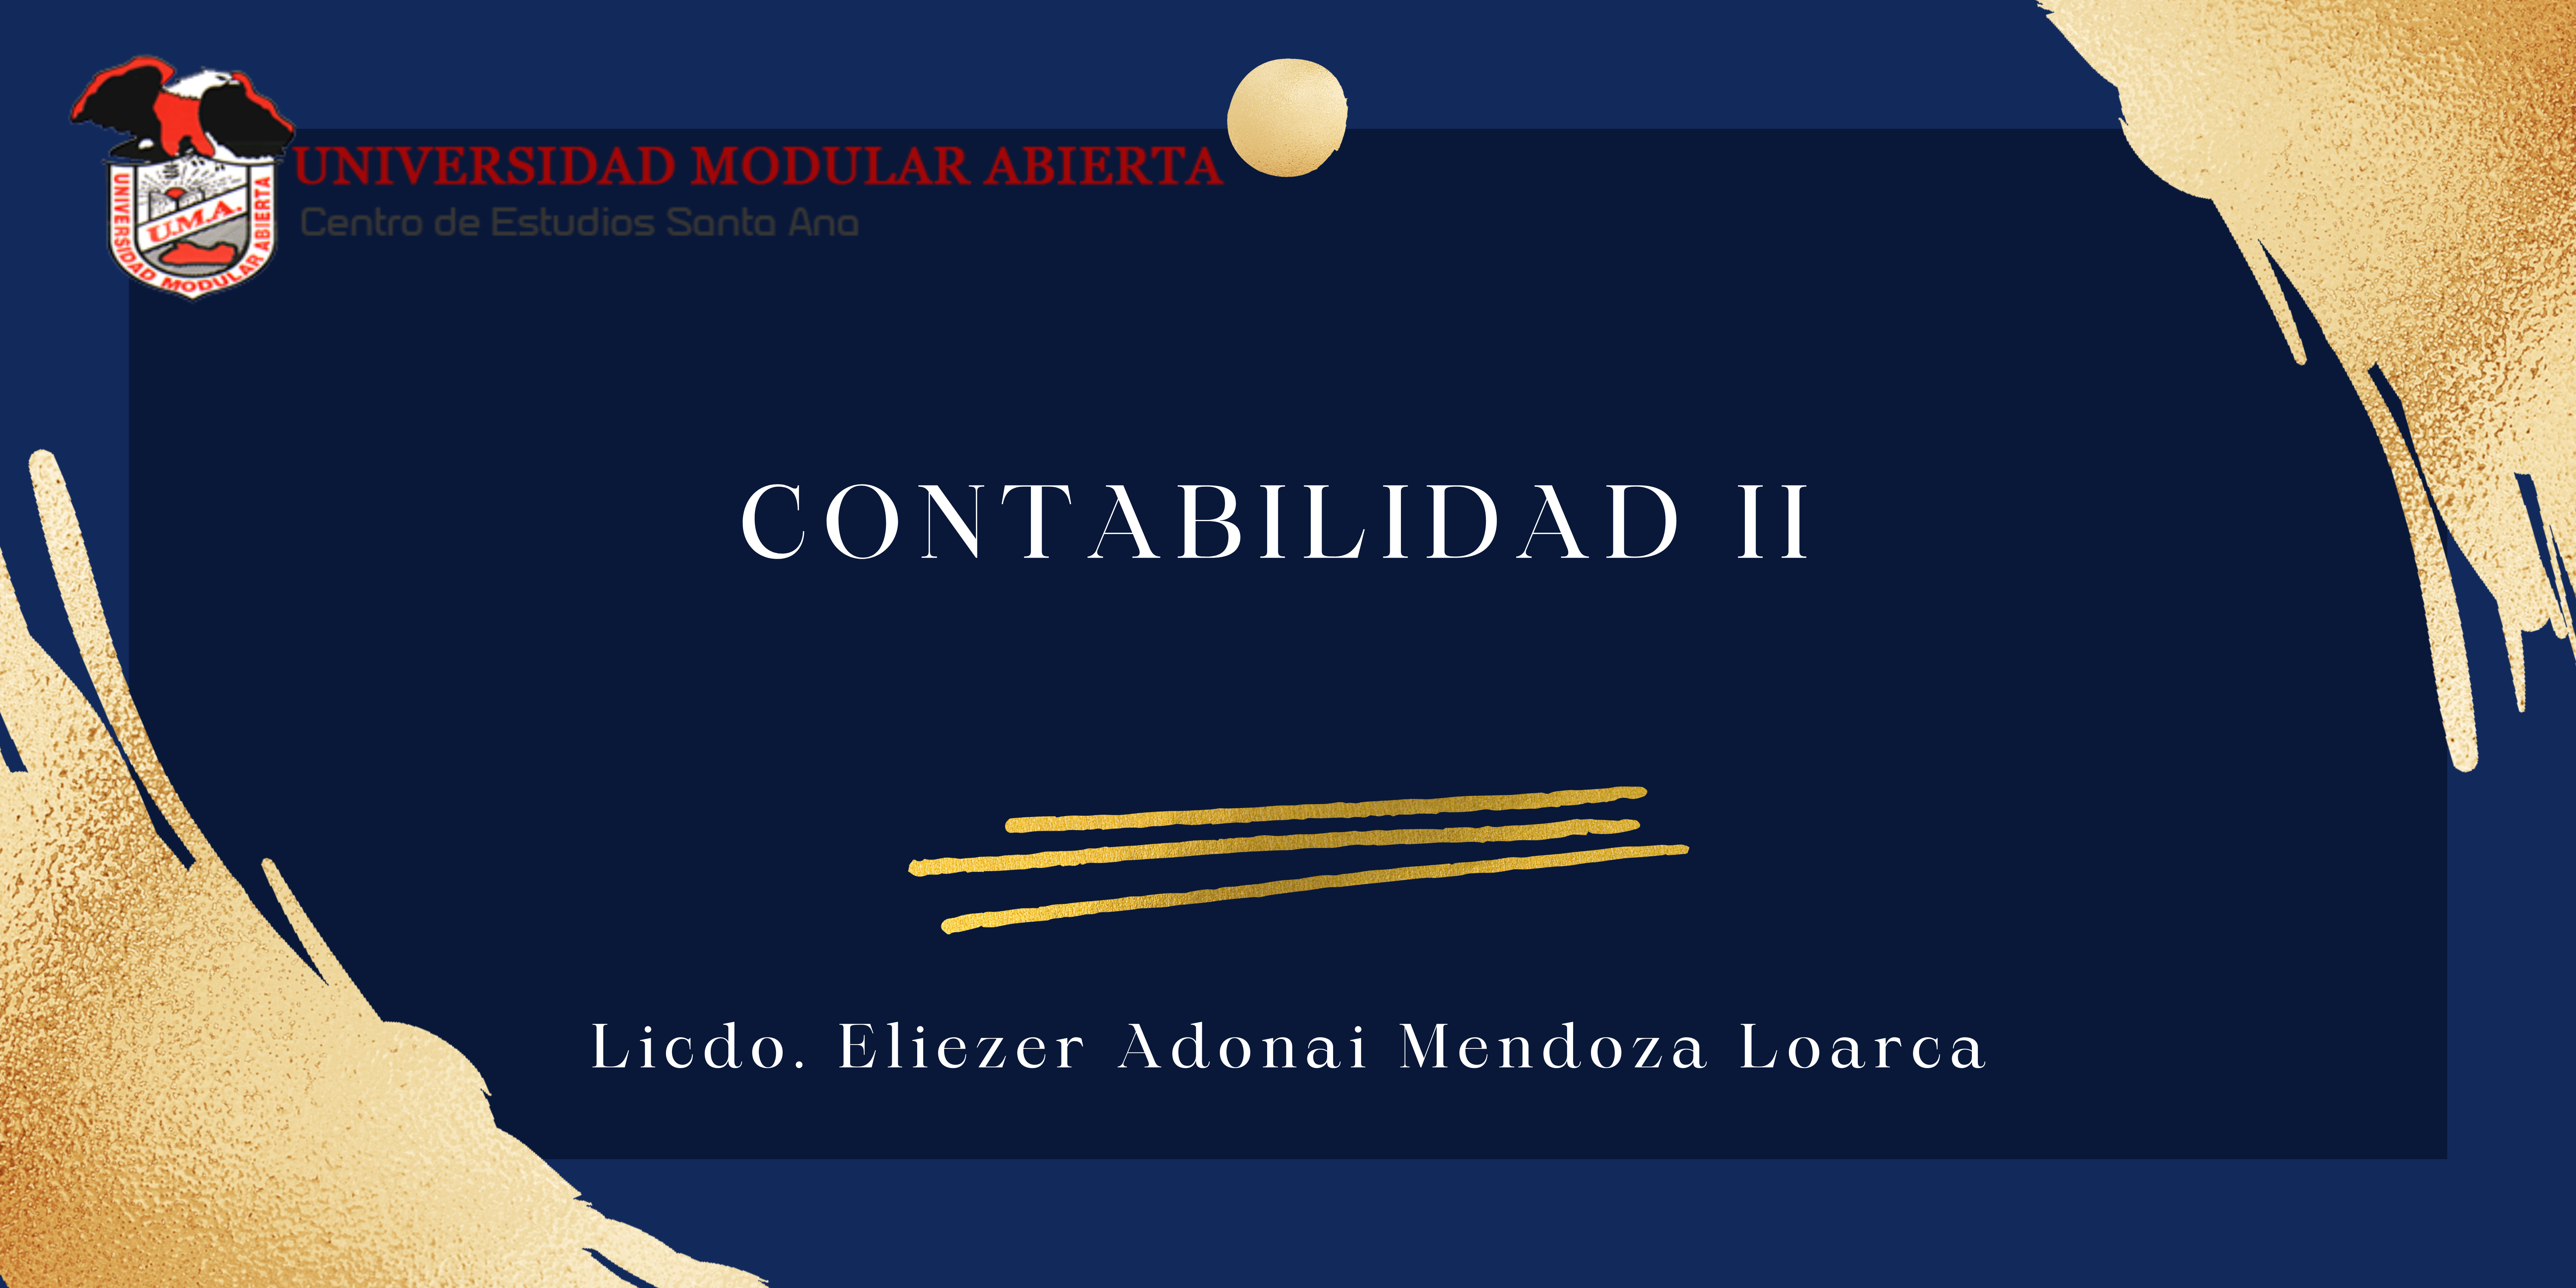 Contabilidad II -D- (Licdo. Eliezer Adonai Mendoza Loarca)